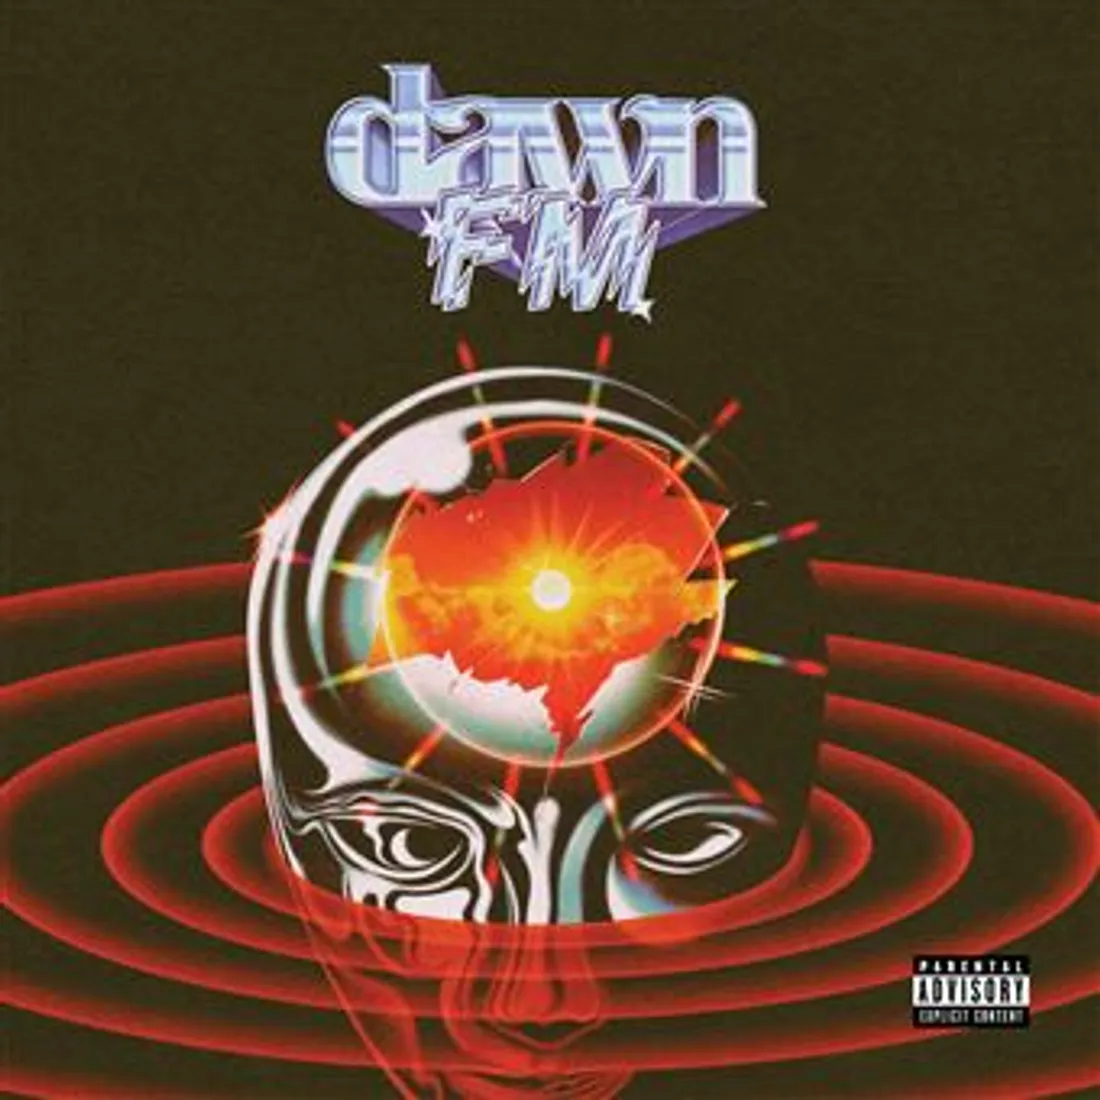 Dawn FM